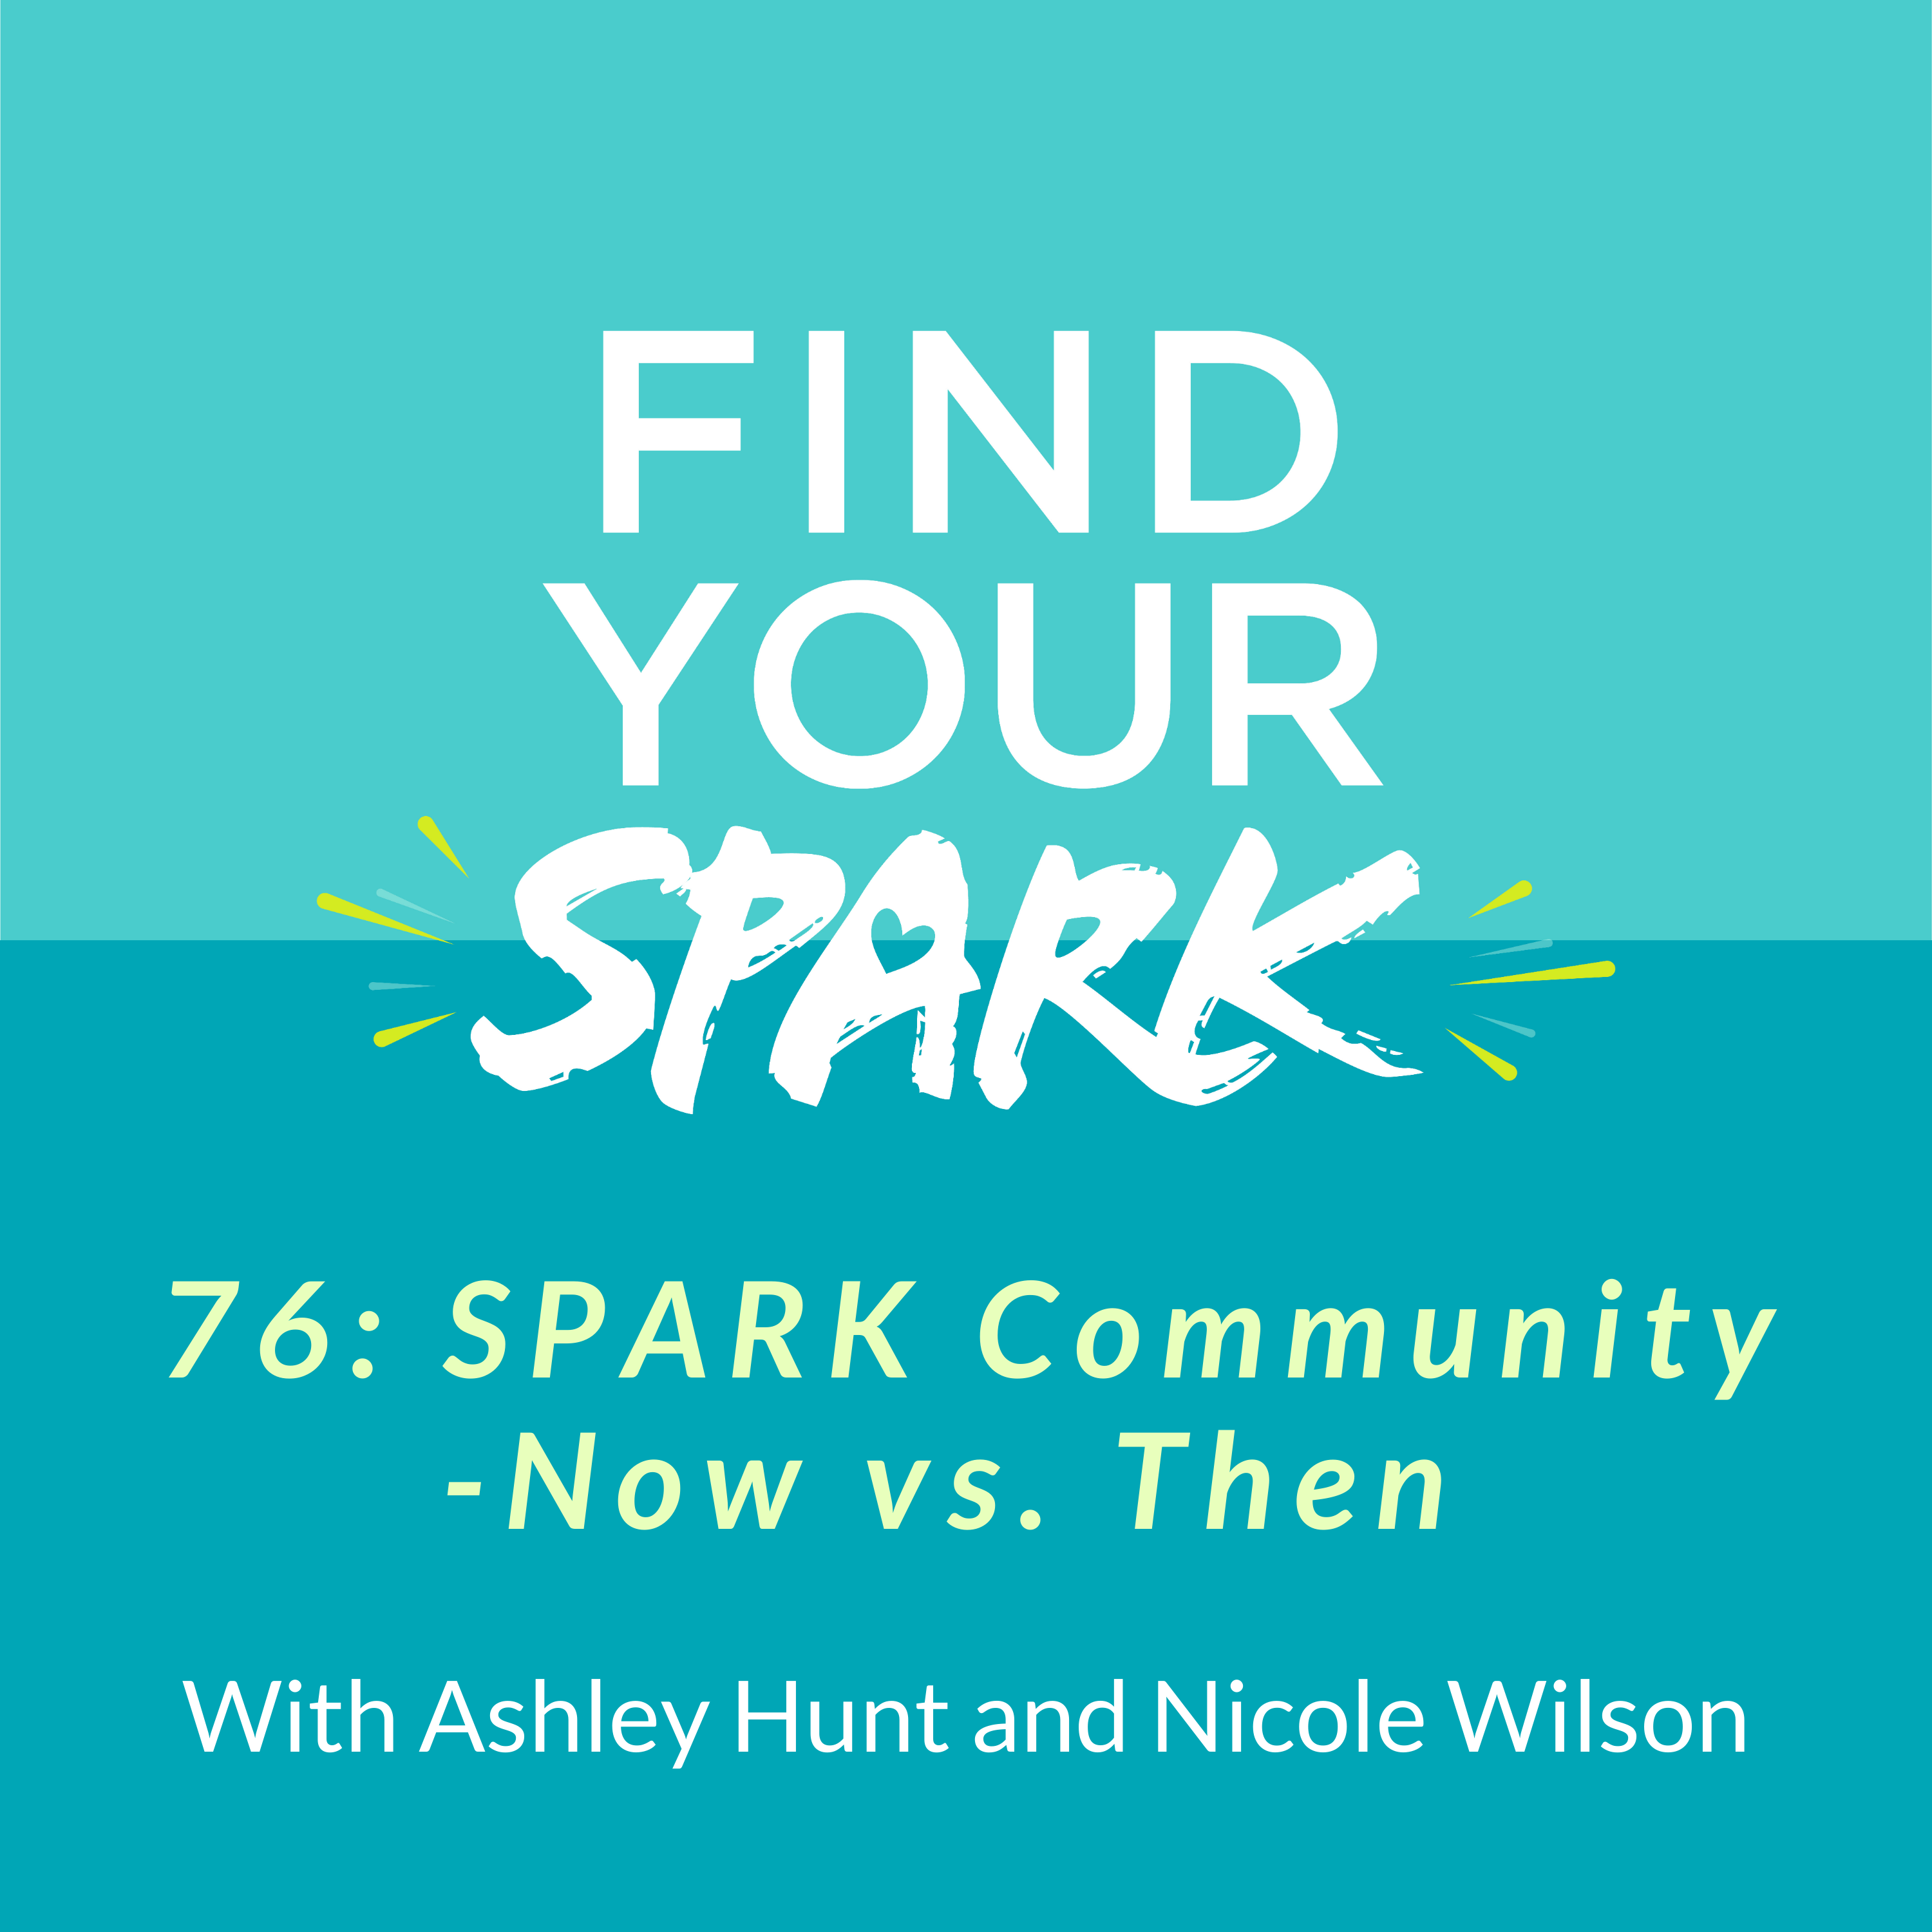 76: SPARK Community - Now vs. Then